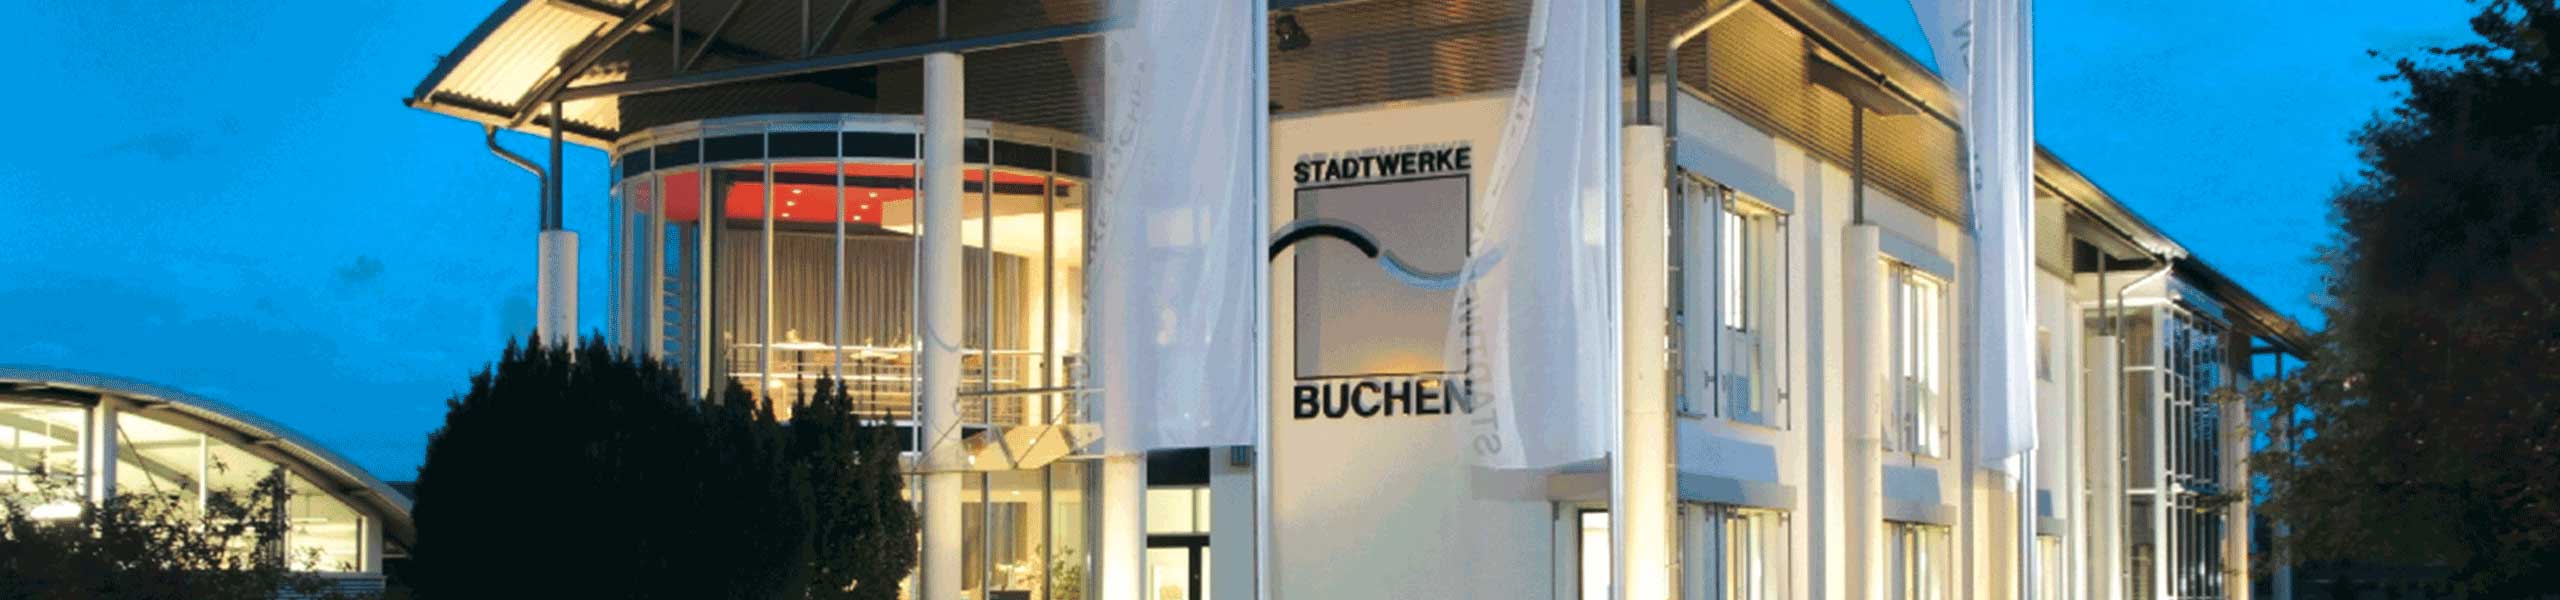 Stadtwerke Buchen GmbH & Co KG - Ihr Versorger vor Ort - Dienstleistungen